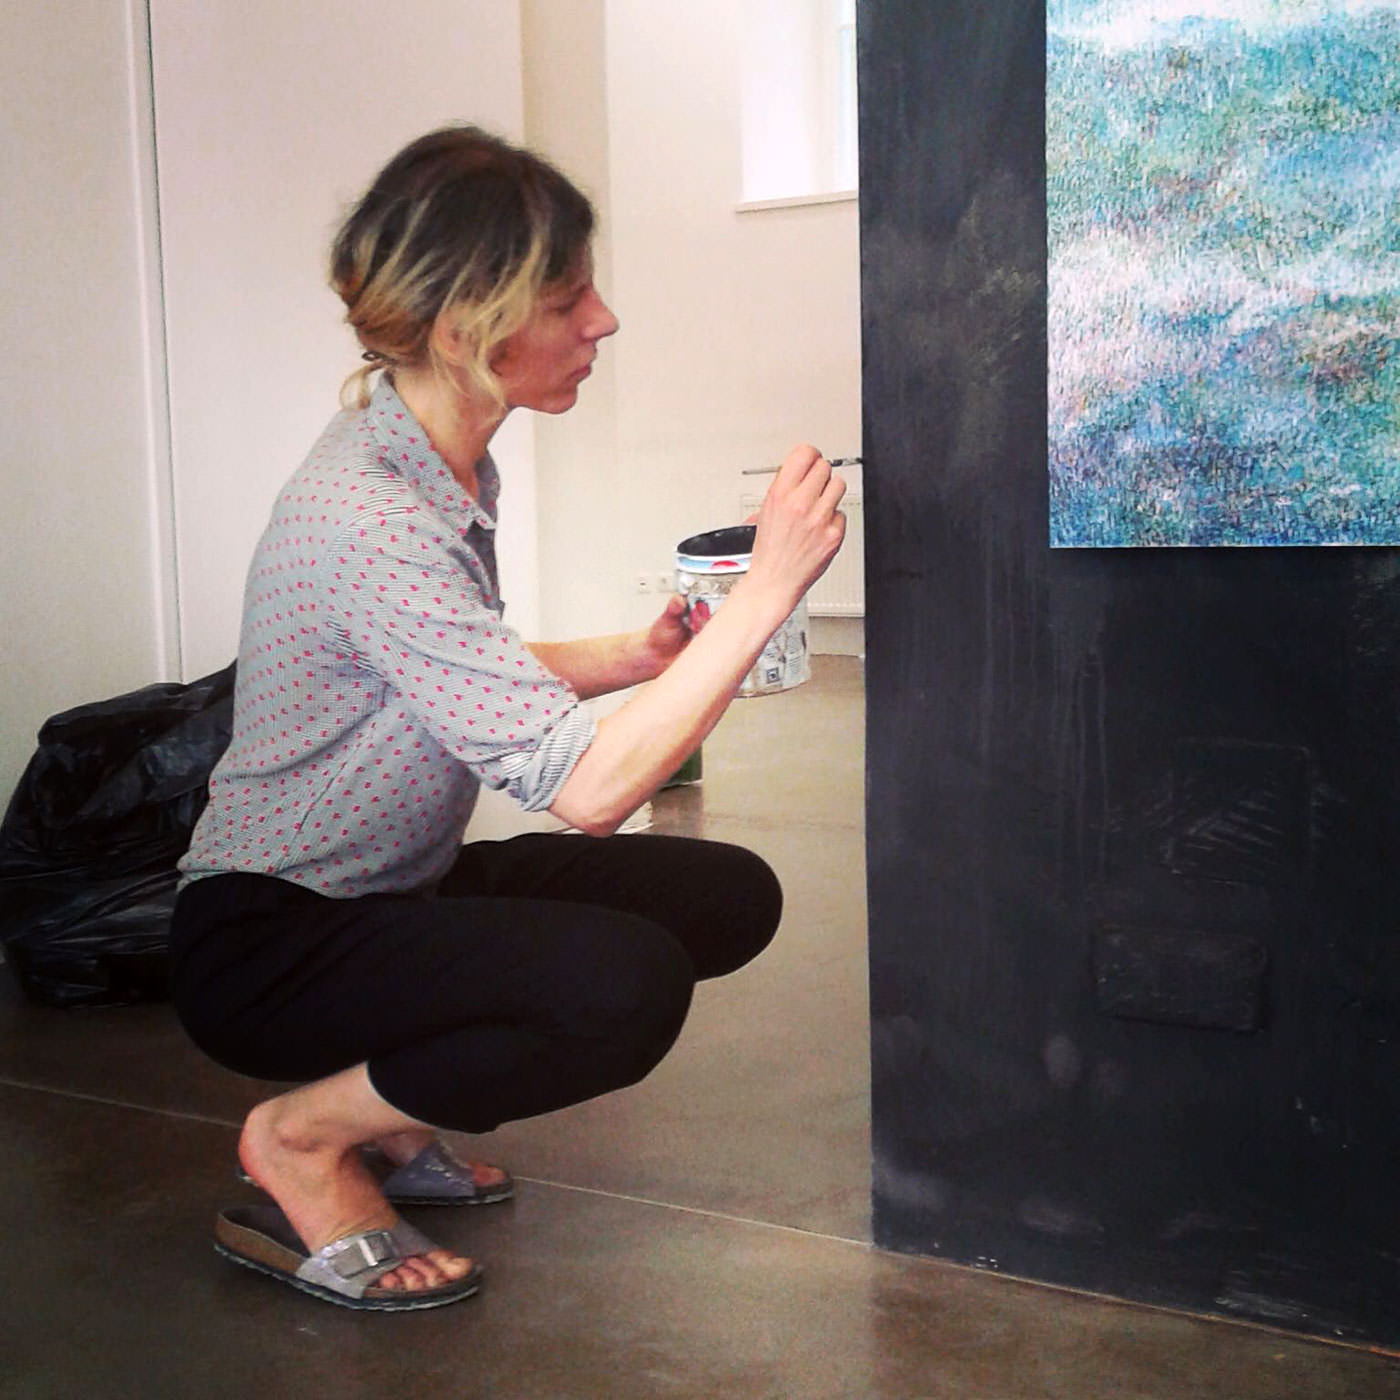 Linda Berger in Seitenansicht, hockend mit Pinsel in der Hand, konzentriert an einer Wand malend.